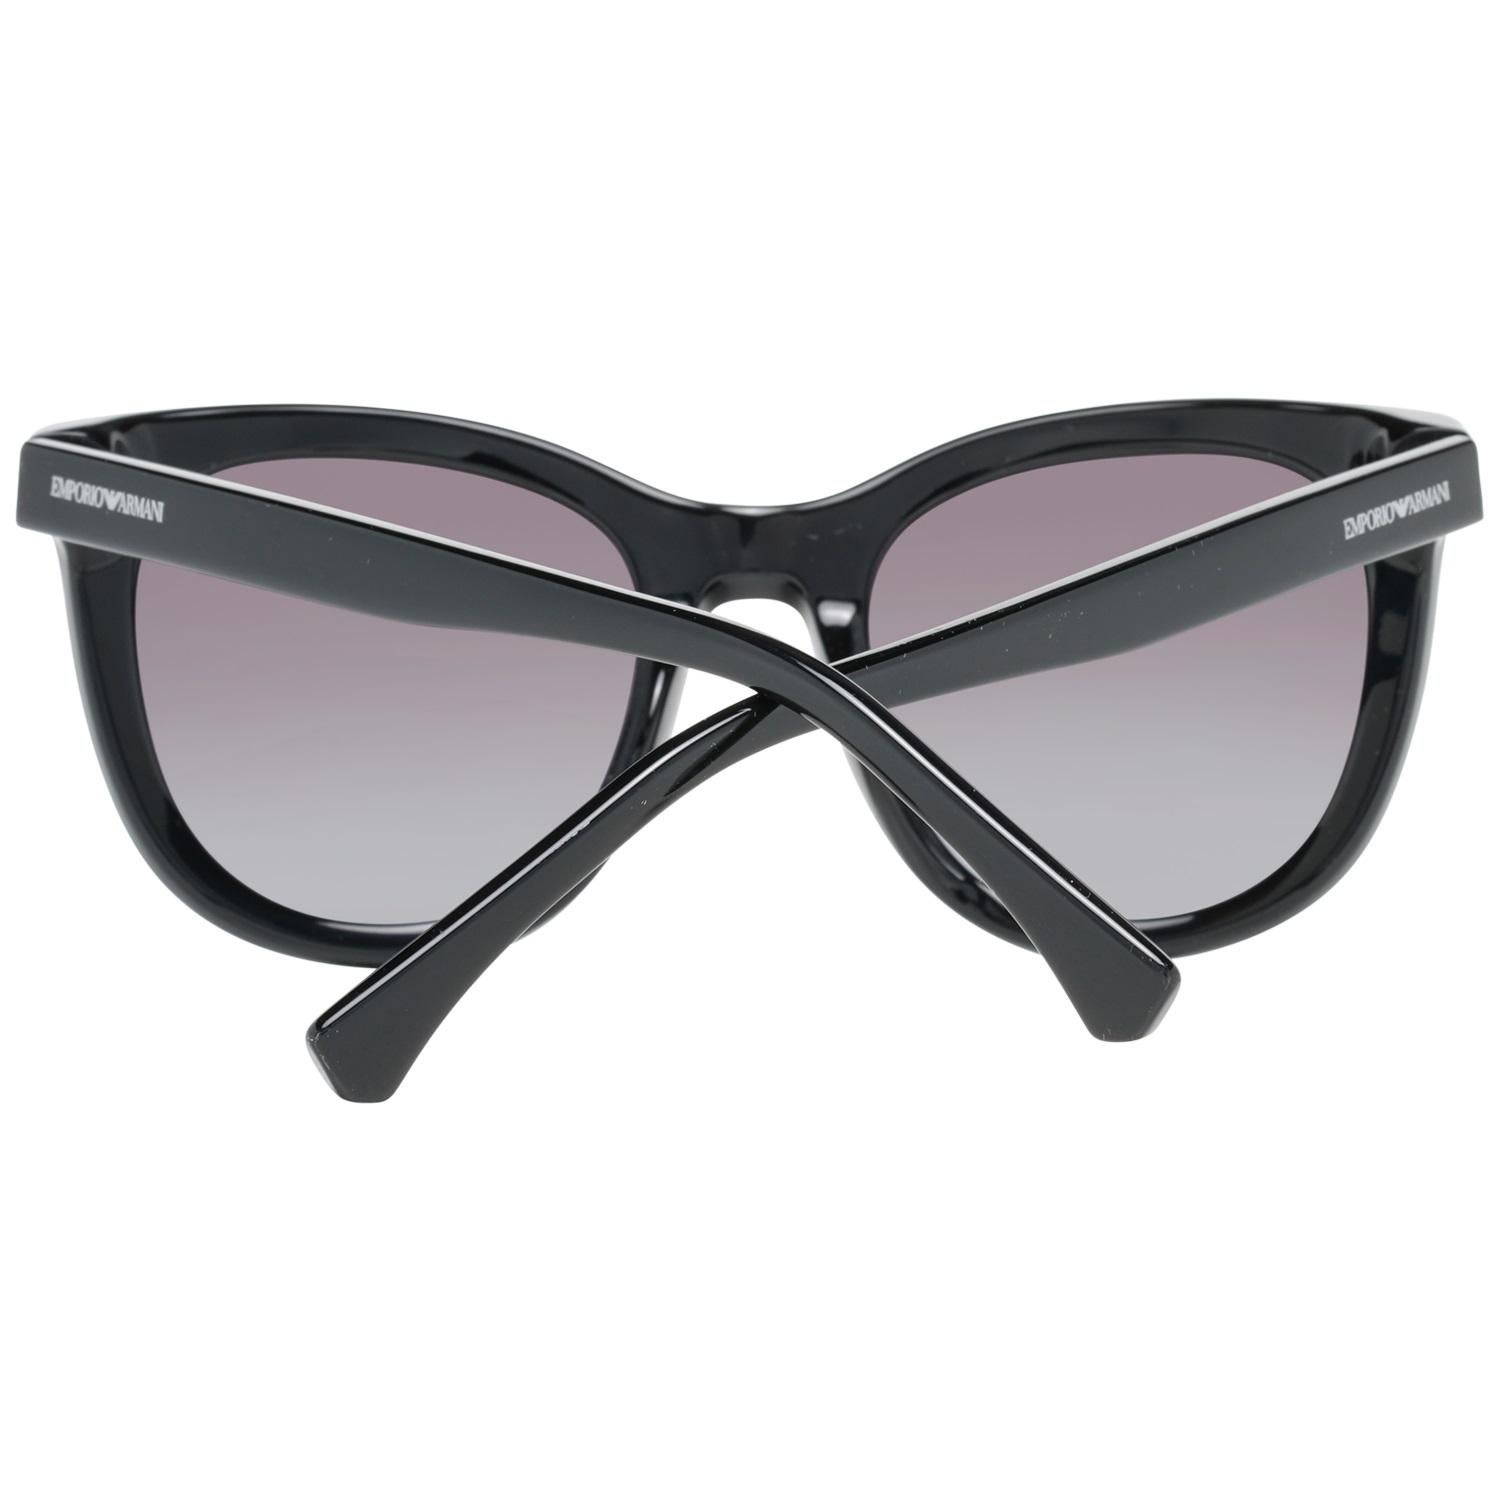 Emporio Armani Black Sunglasses EA4125F 50018G 61/17 139 mm In New Condition For Sale In Rome, Rome